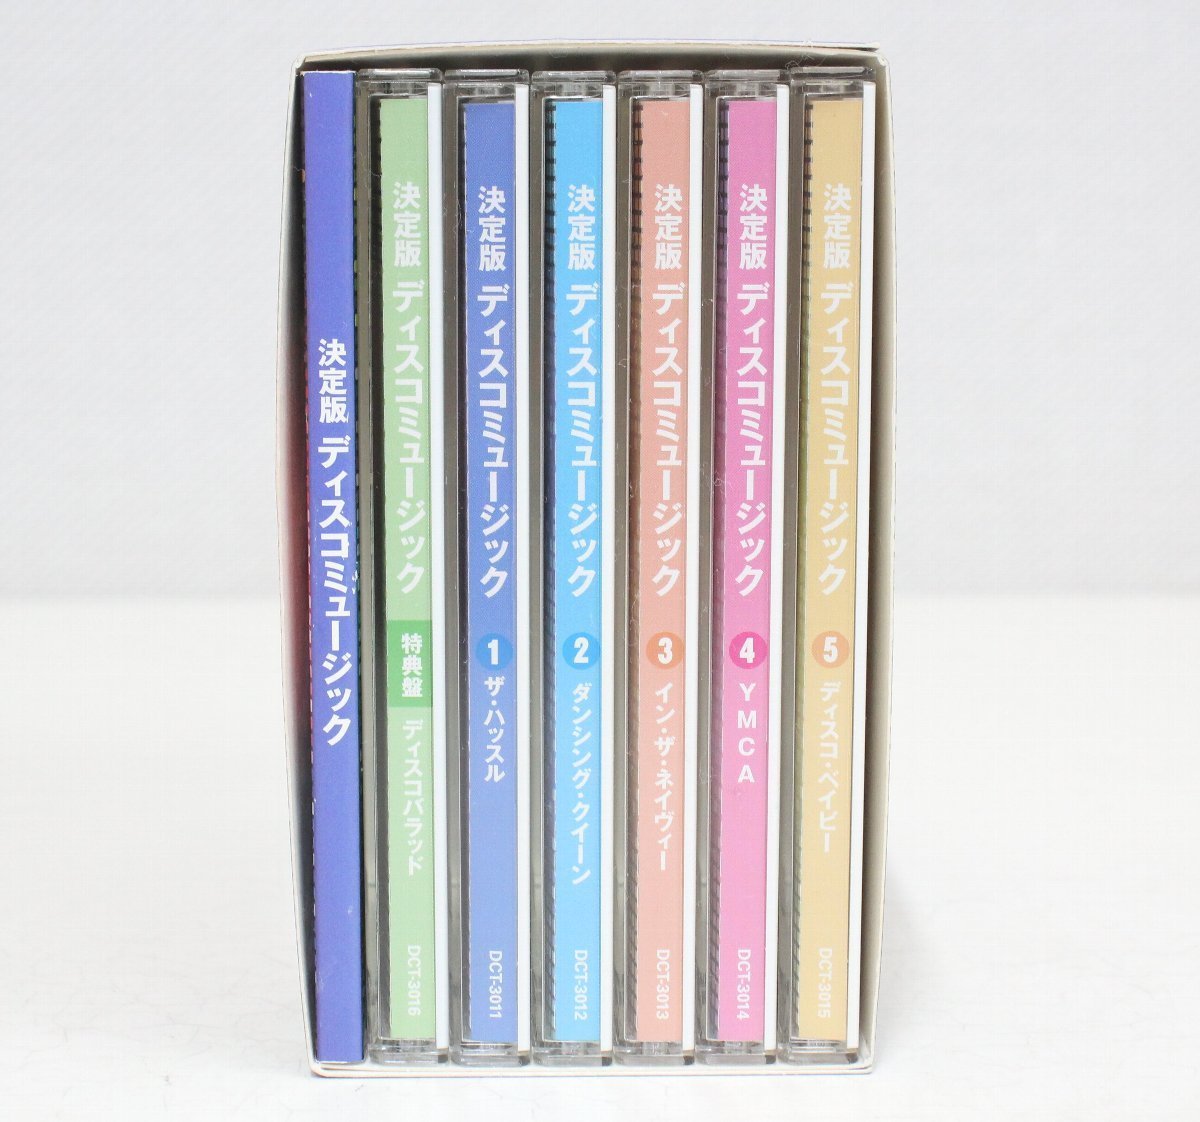 jy13#CD box * решение версия disco музыка *CD5 листов комплект + привилегия запись * все тома в комплекте *Y. M. C. A./ hot * штат служащих / Dan sing* Queen др. 